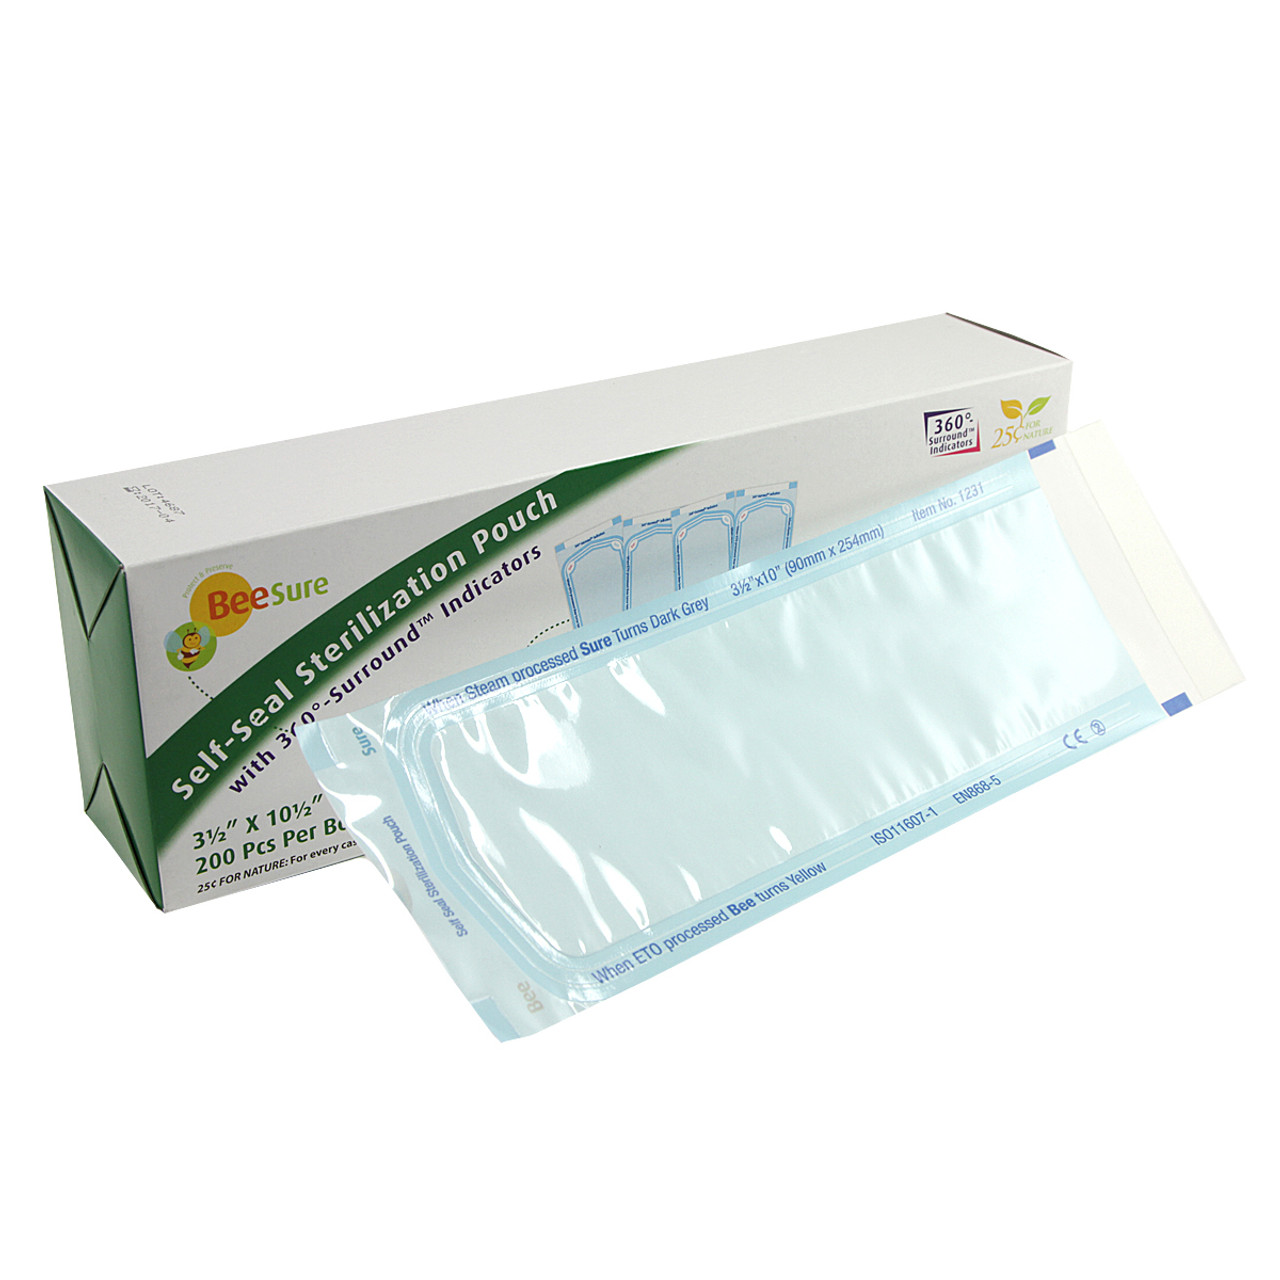 KNK - BeeSure Sterillization Pouch - 3 1/2' x 10'